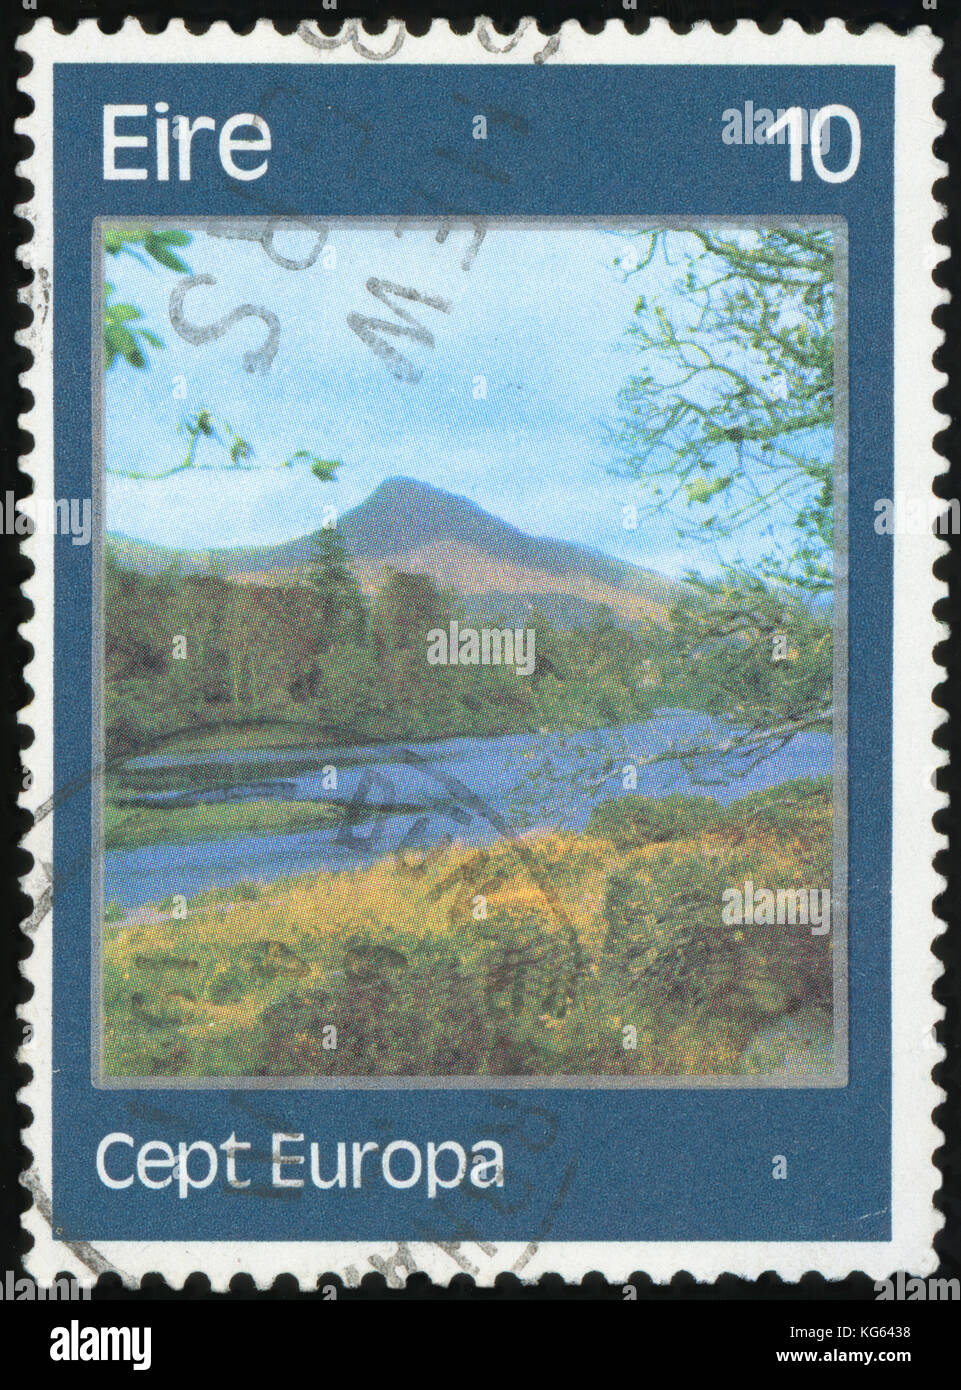 Postage stamp - Ireland Stock Photo